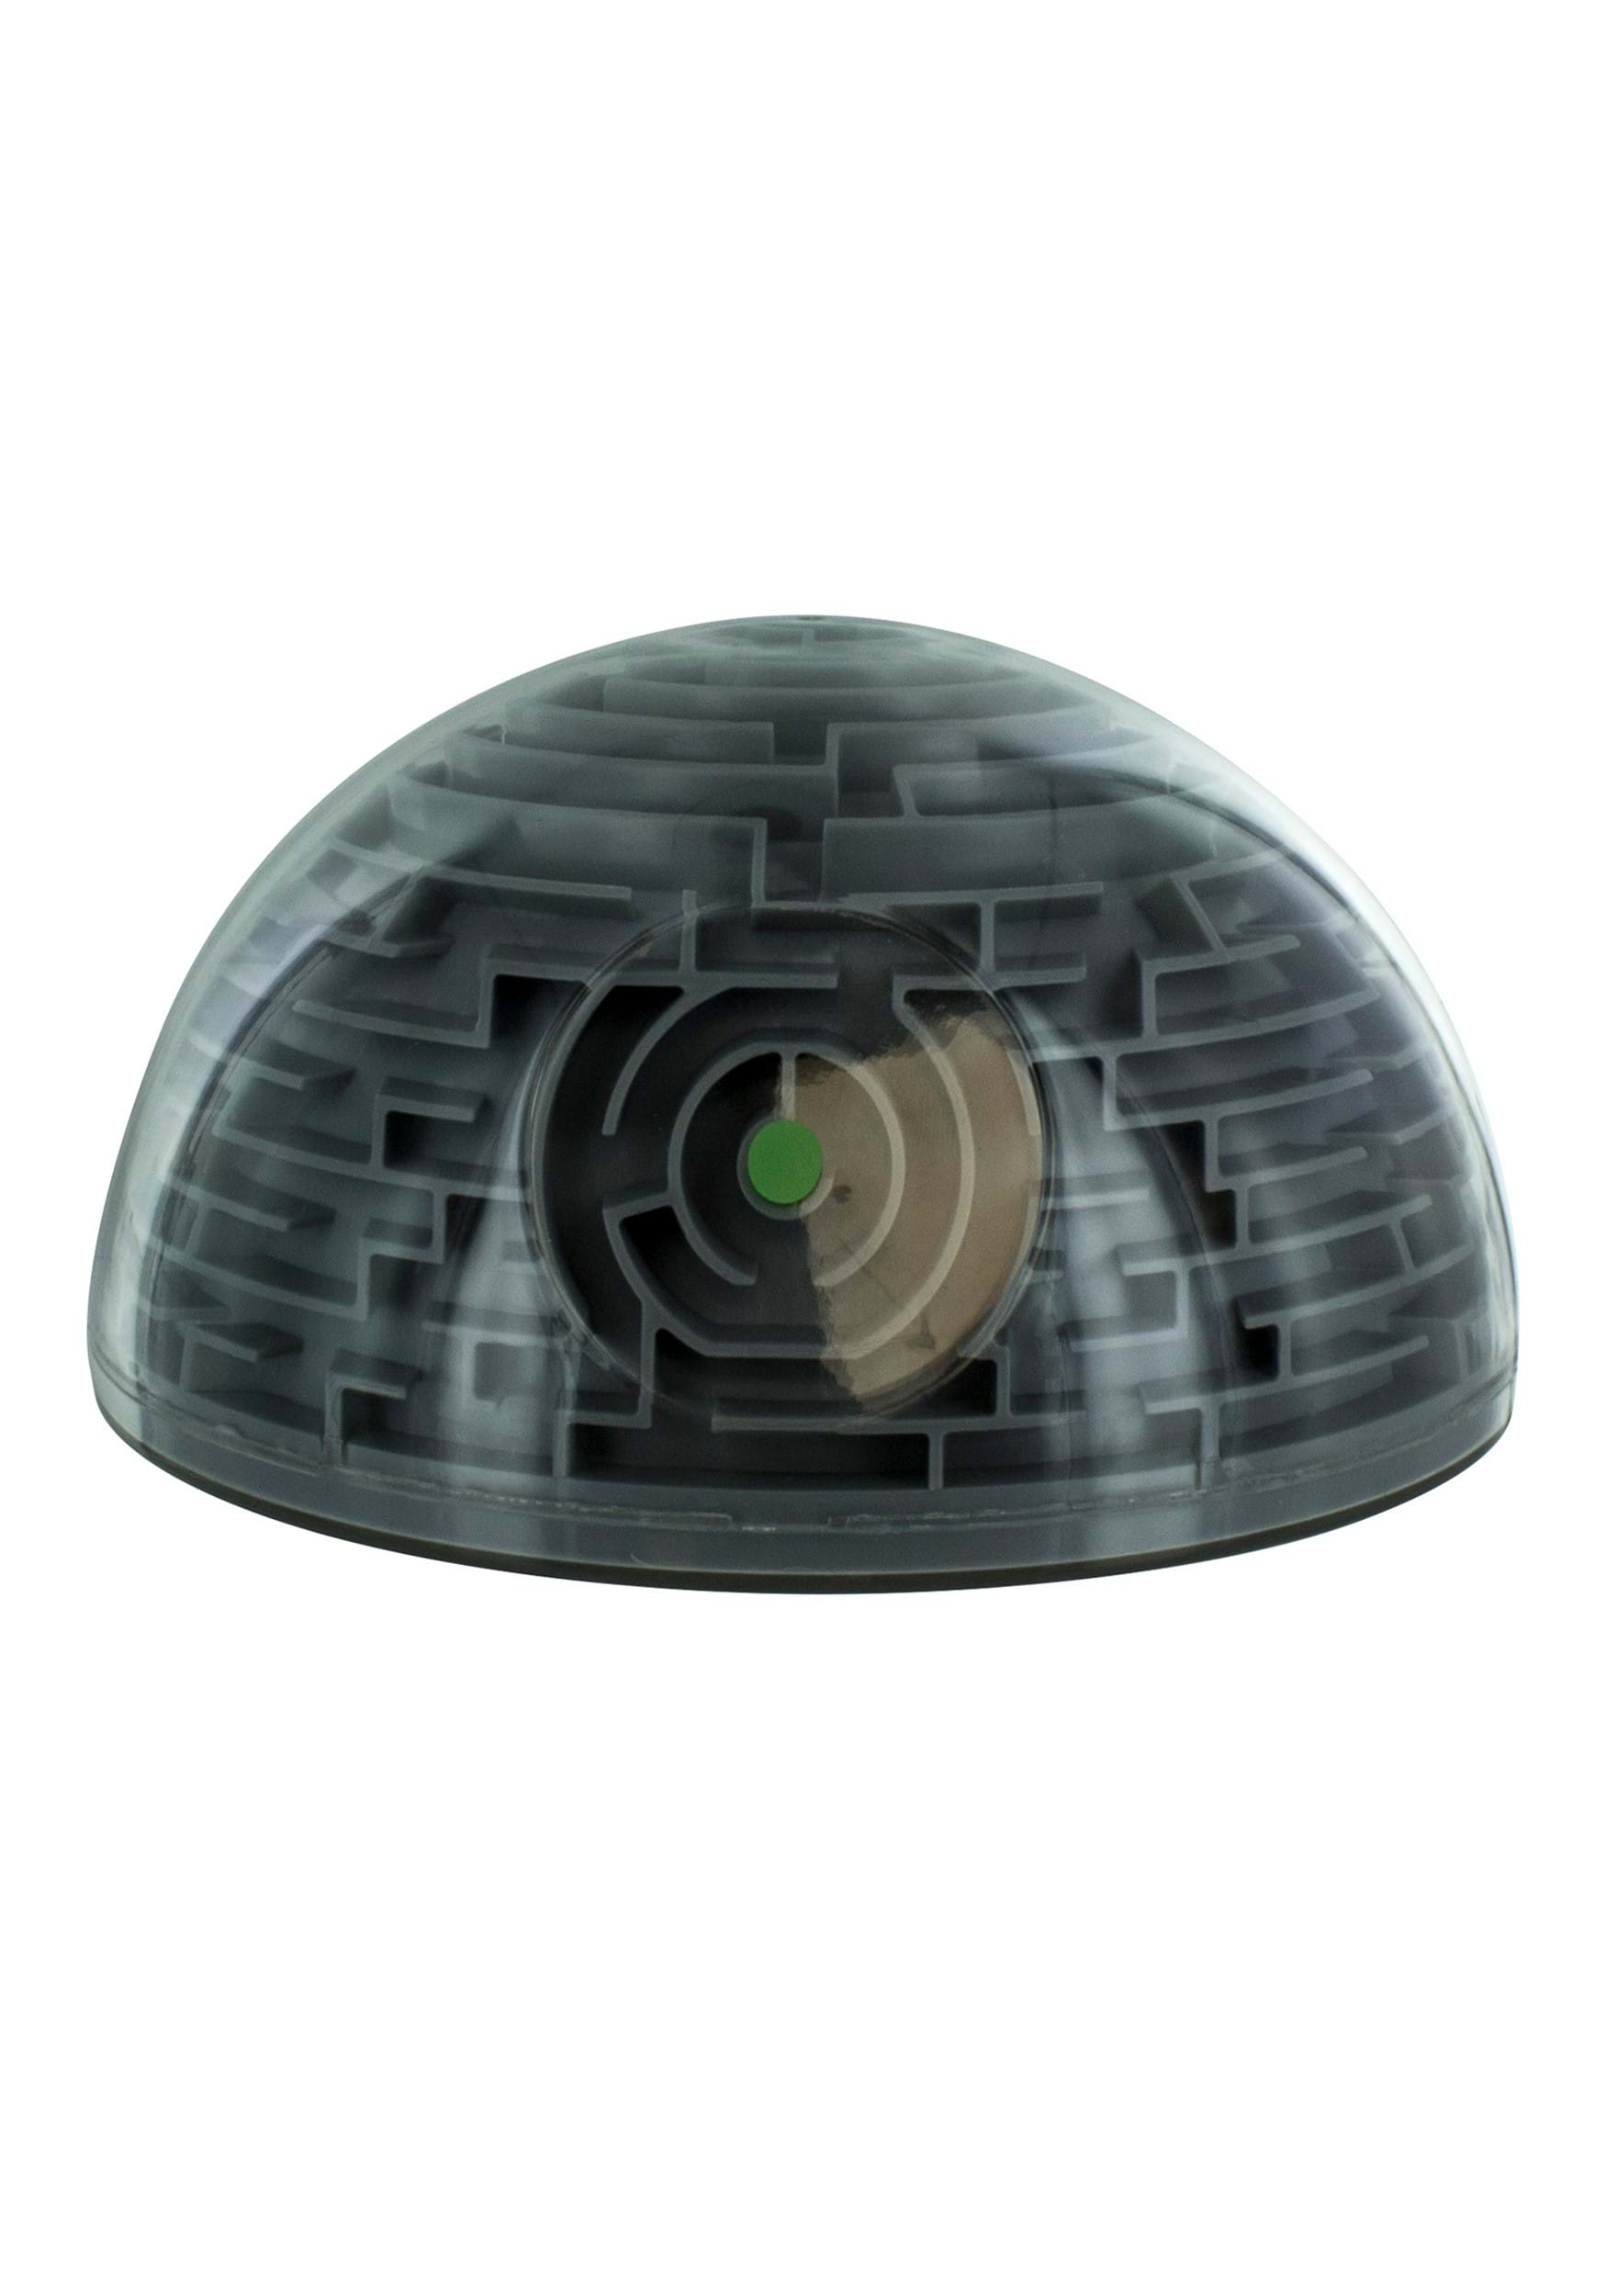 Ball Bearing Death Star Maze , Star Wars Gifts